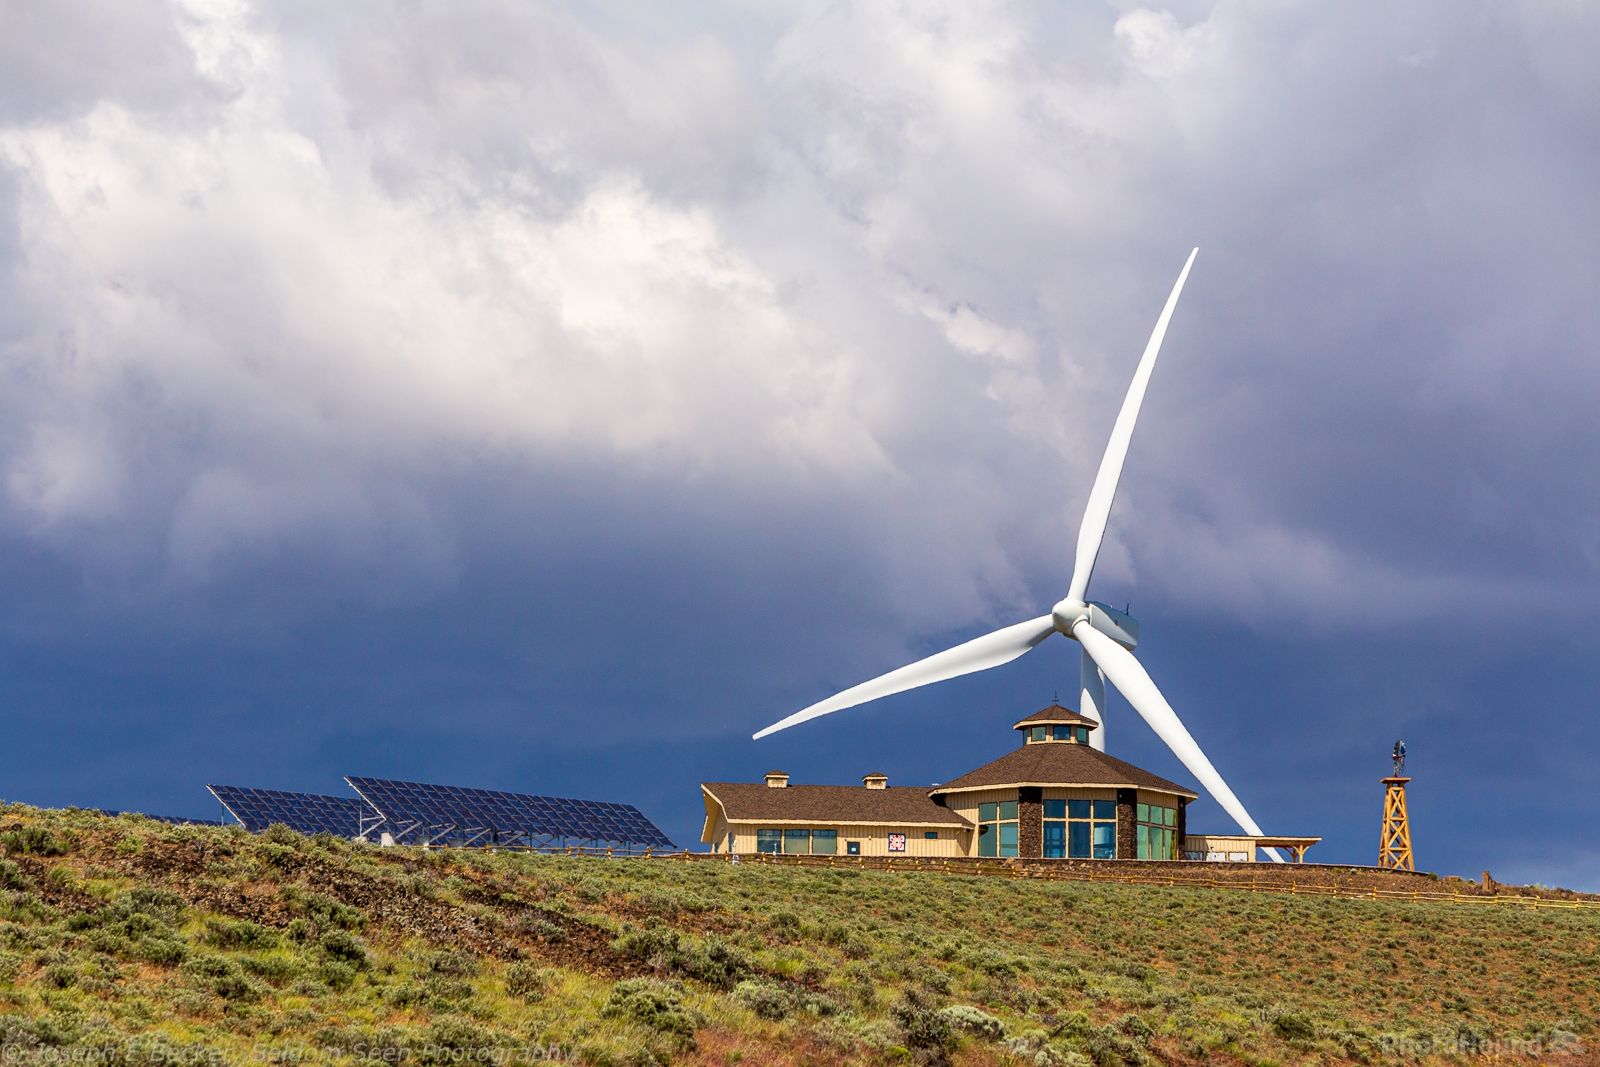 Image of Wild Horse Wind Farm by Joe Becker